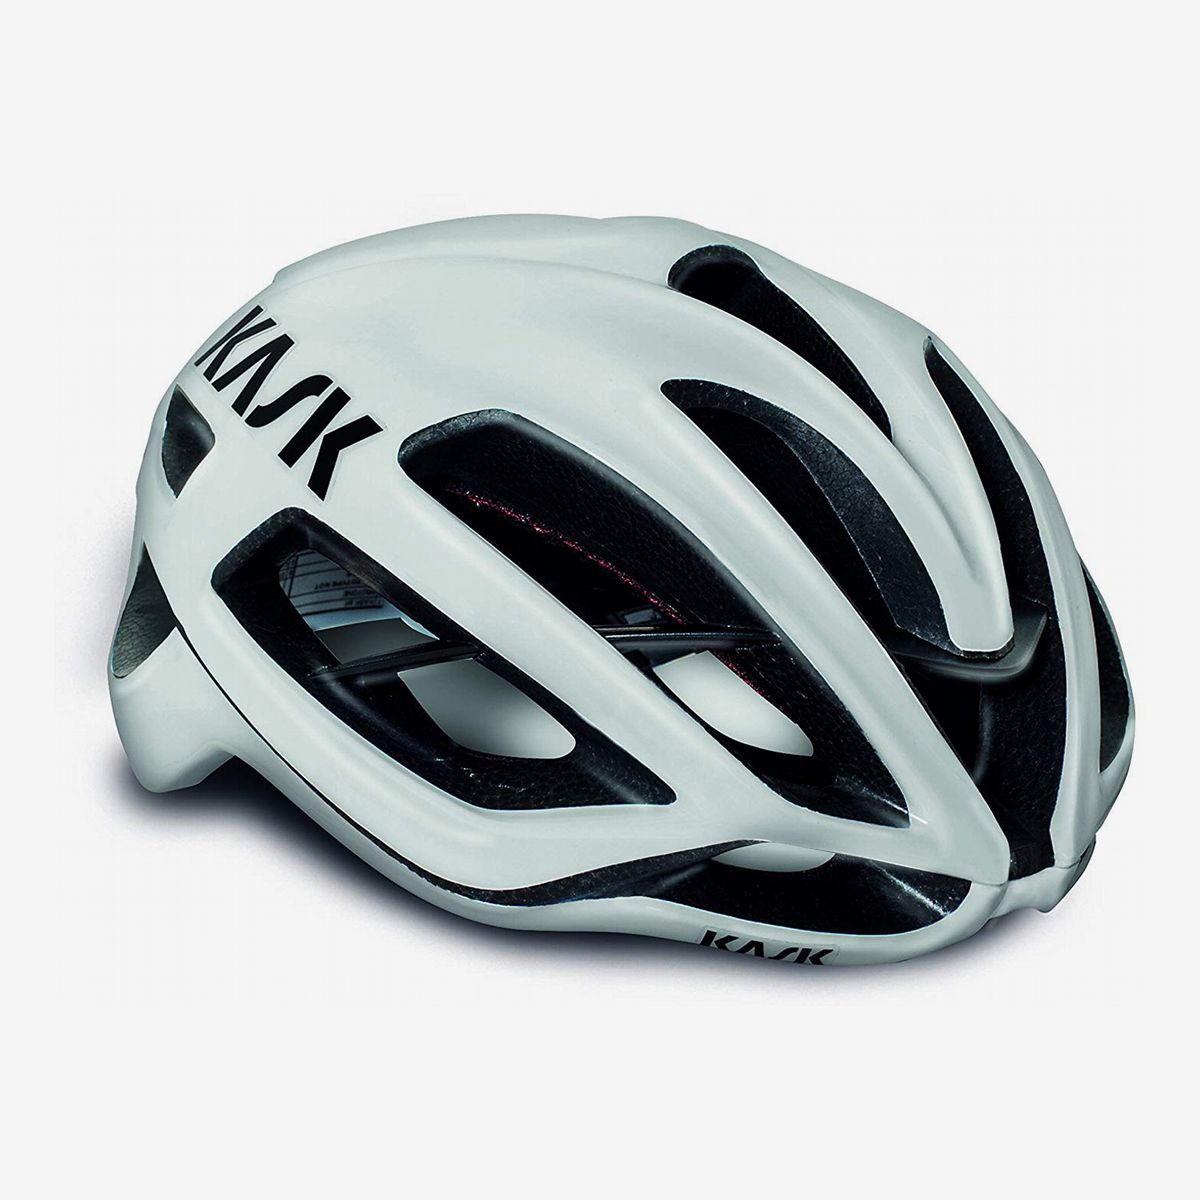 top road cycling helmets